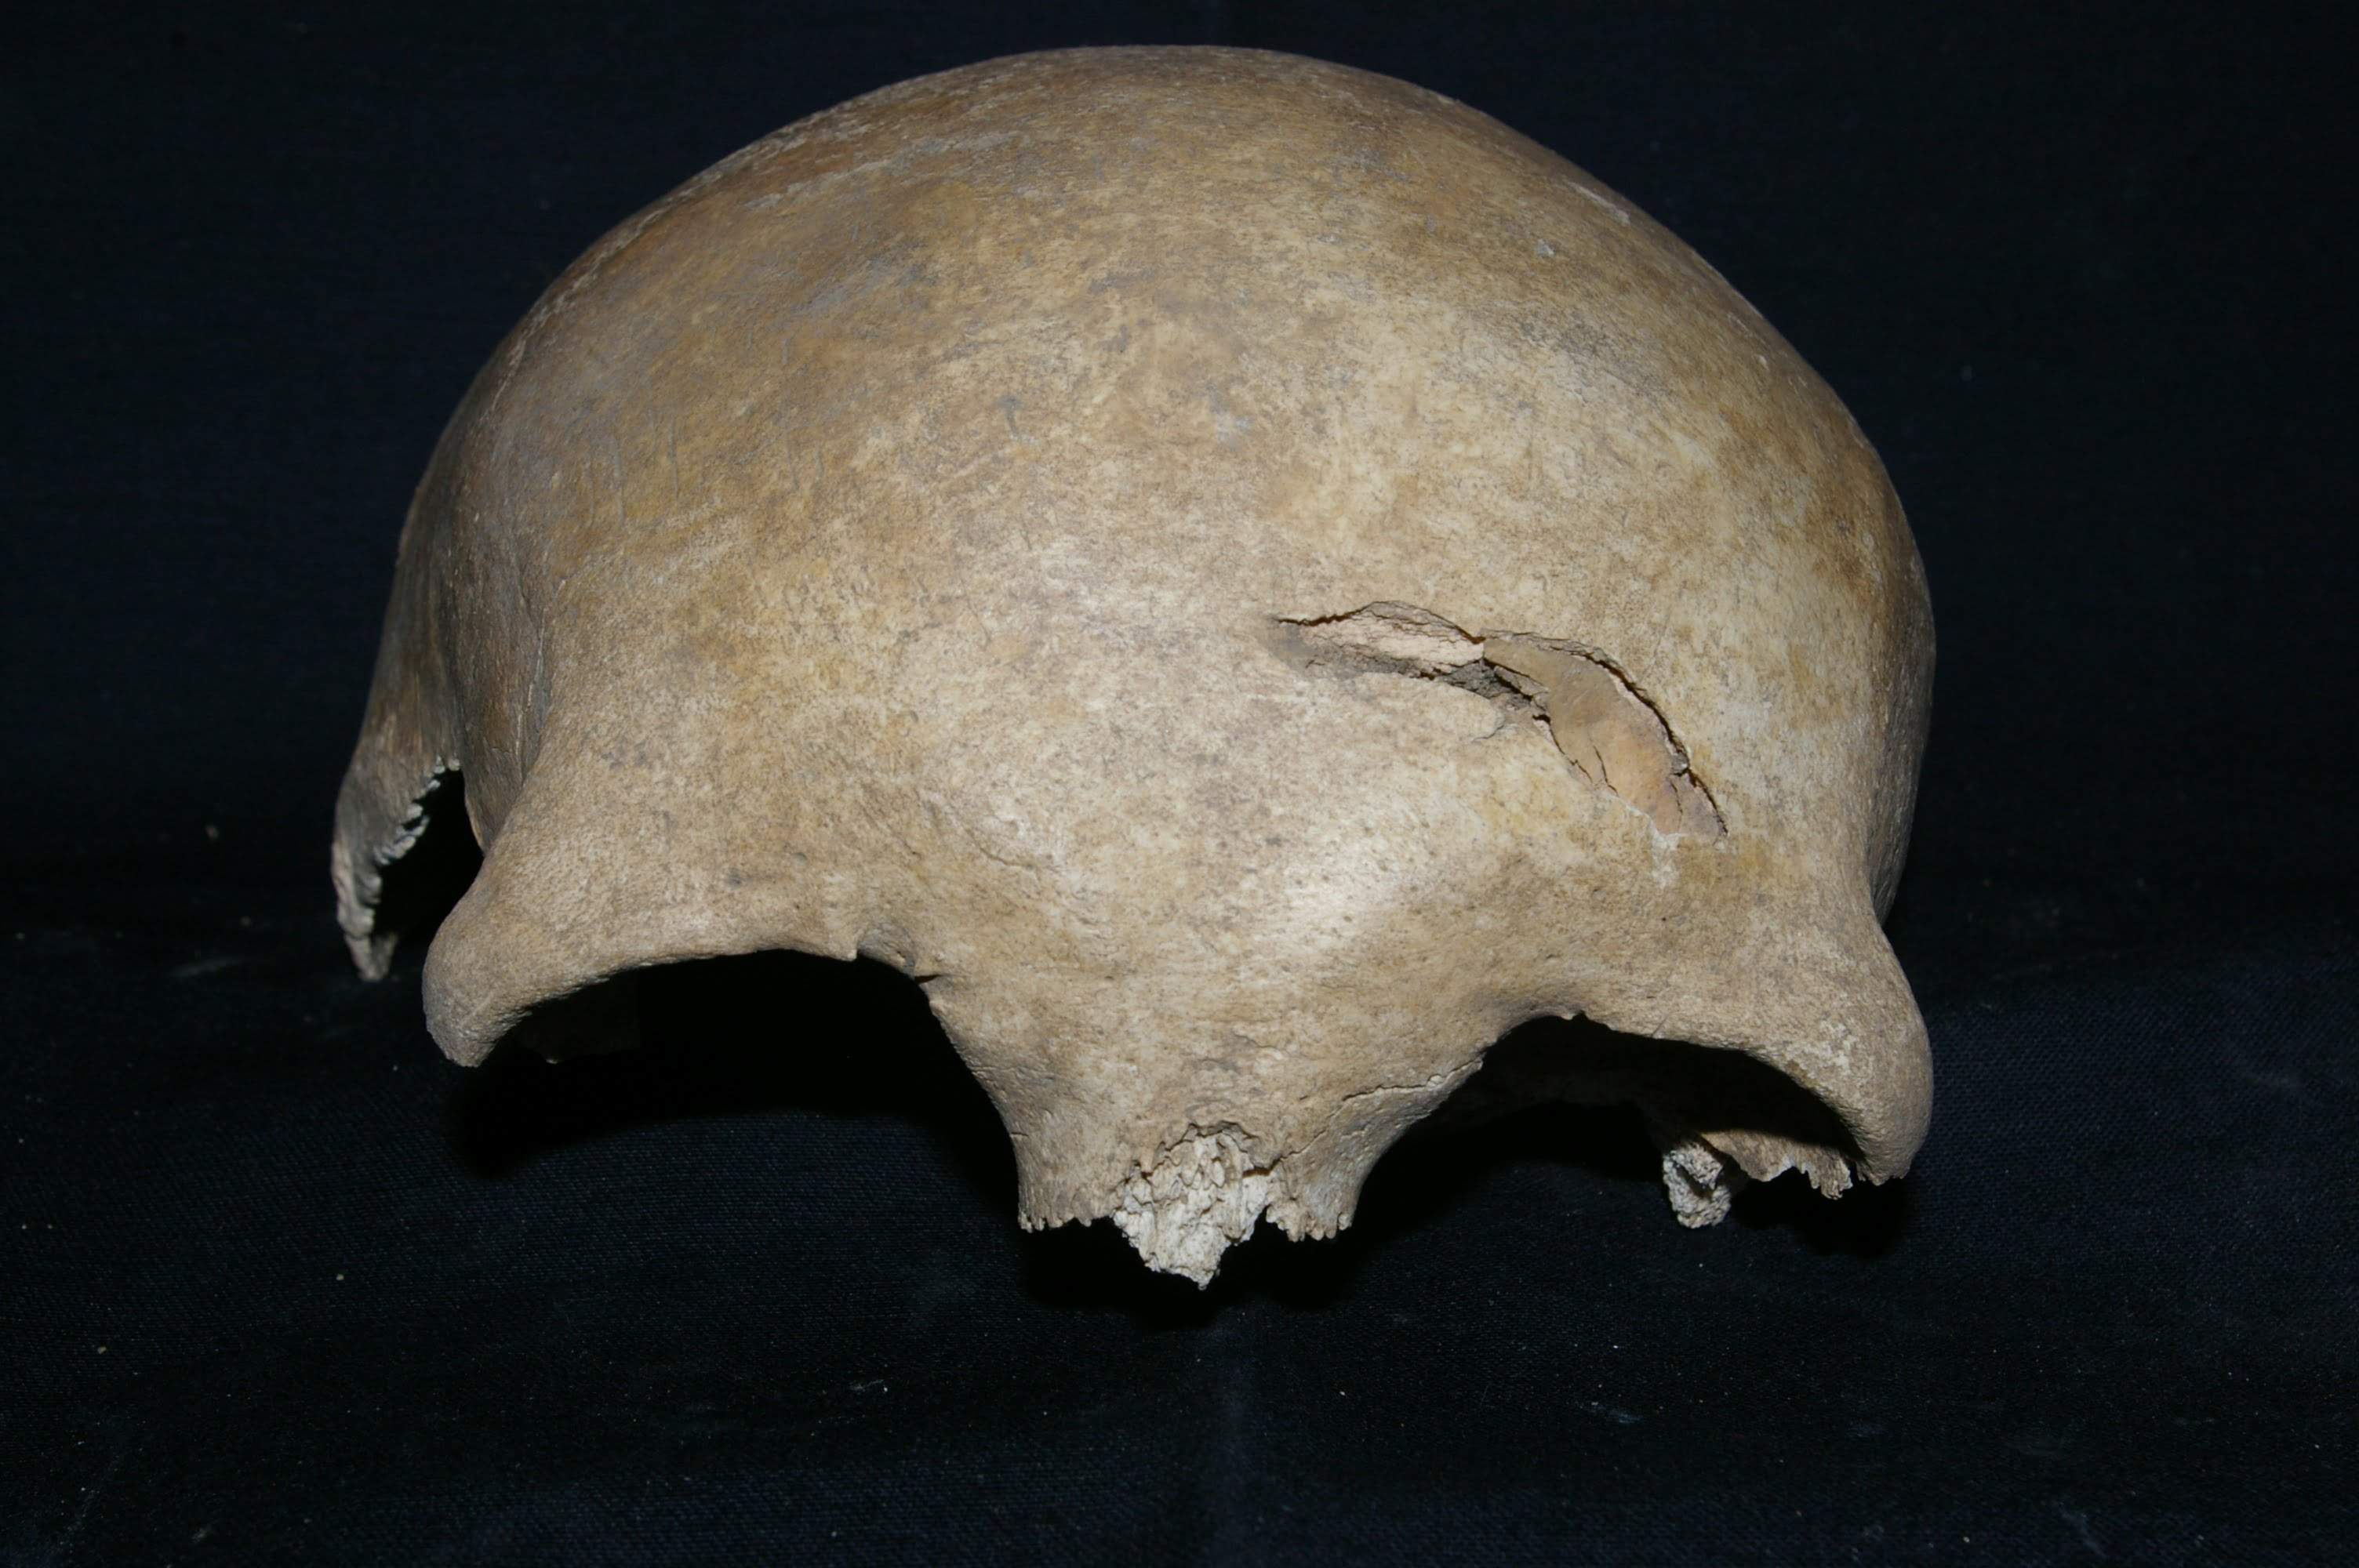 Złamanie z wgnieceniem na łusce kości czołowej - uraz powstały okołośmiertnie (perimortem) bez oznak gojenia - możliwa przyczyna zgonu - XVI wiek Bydgoszcz